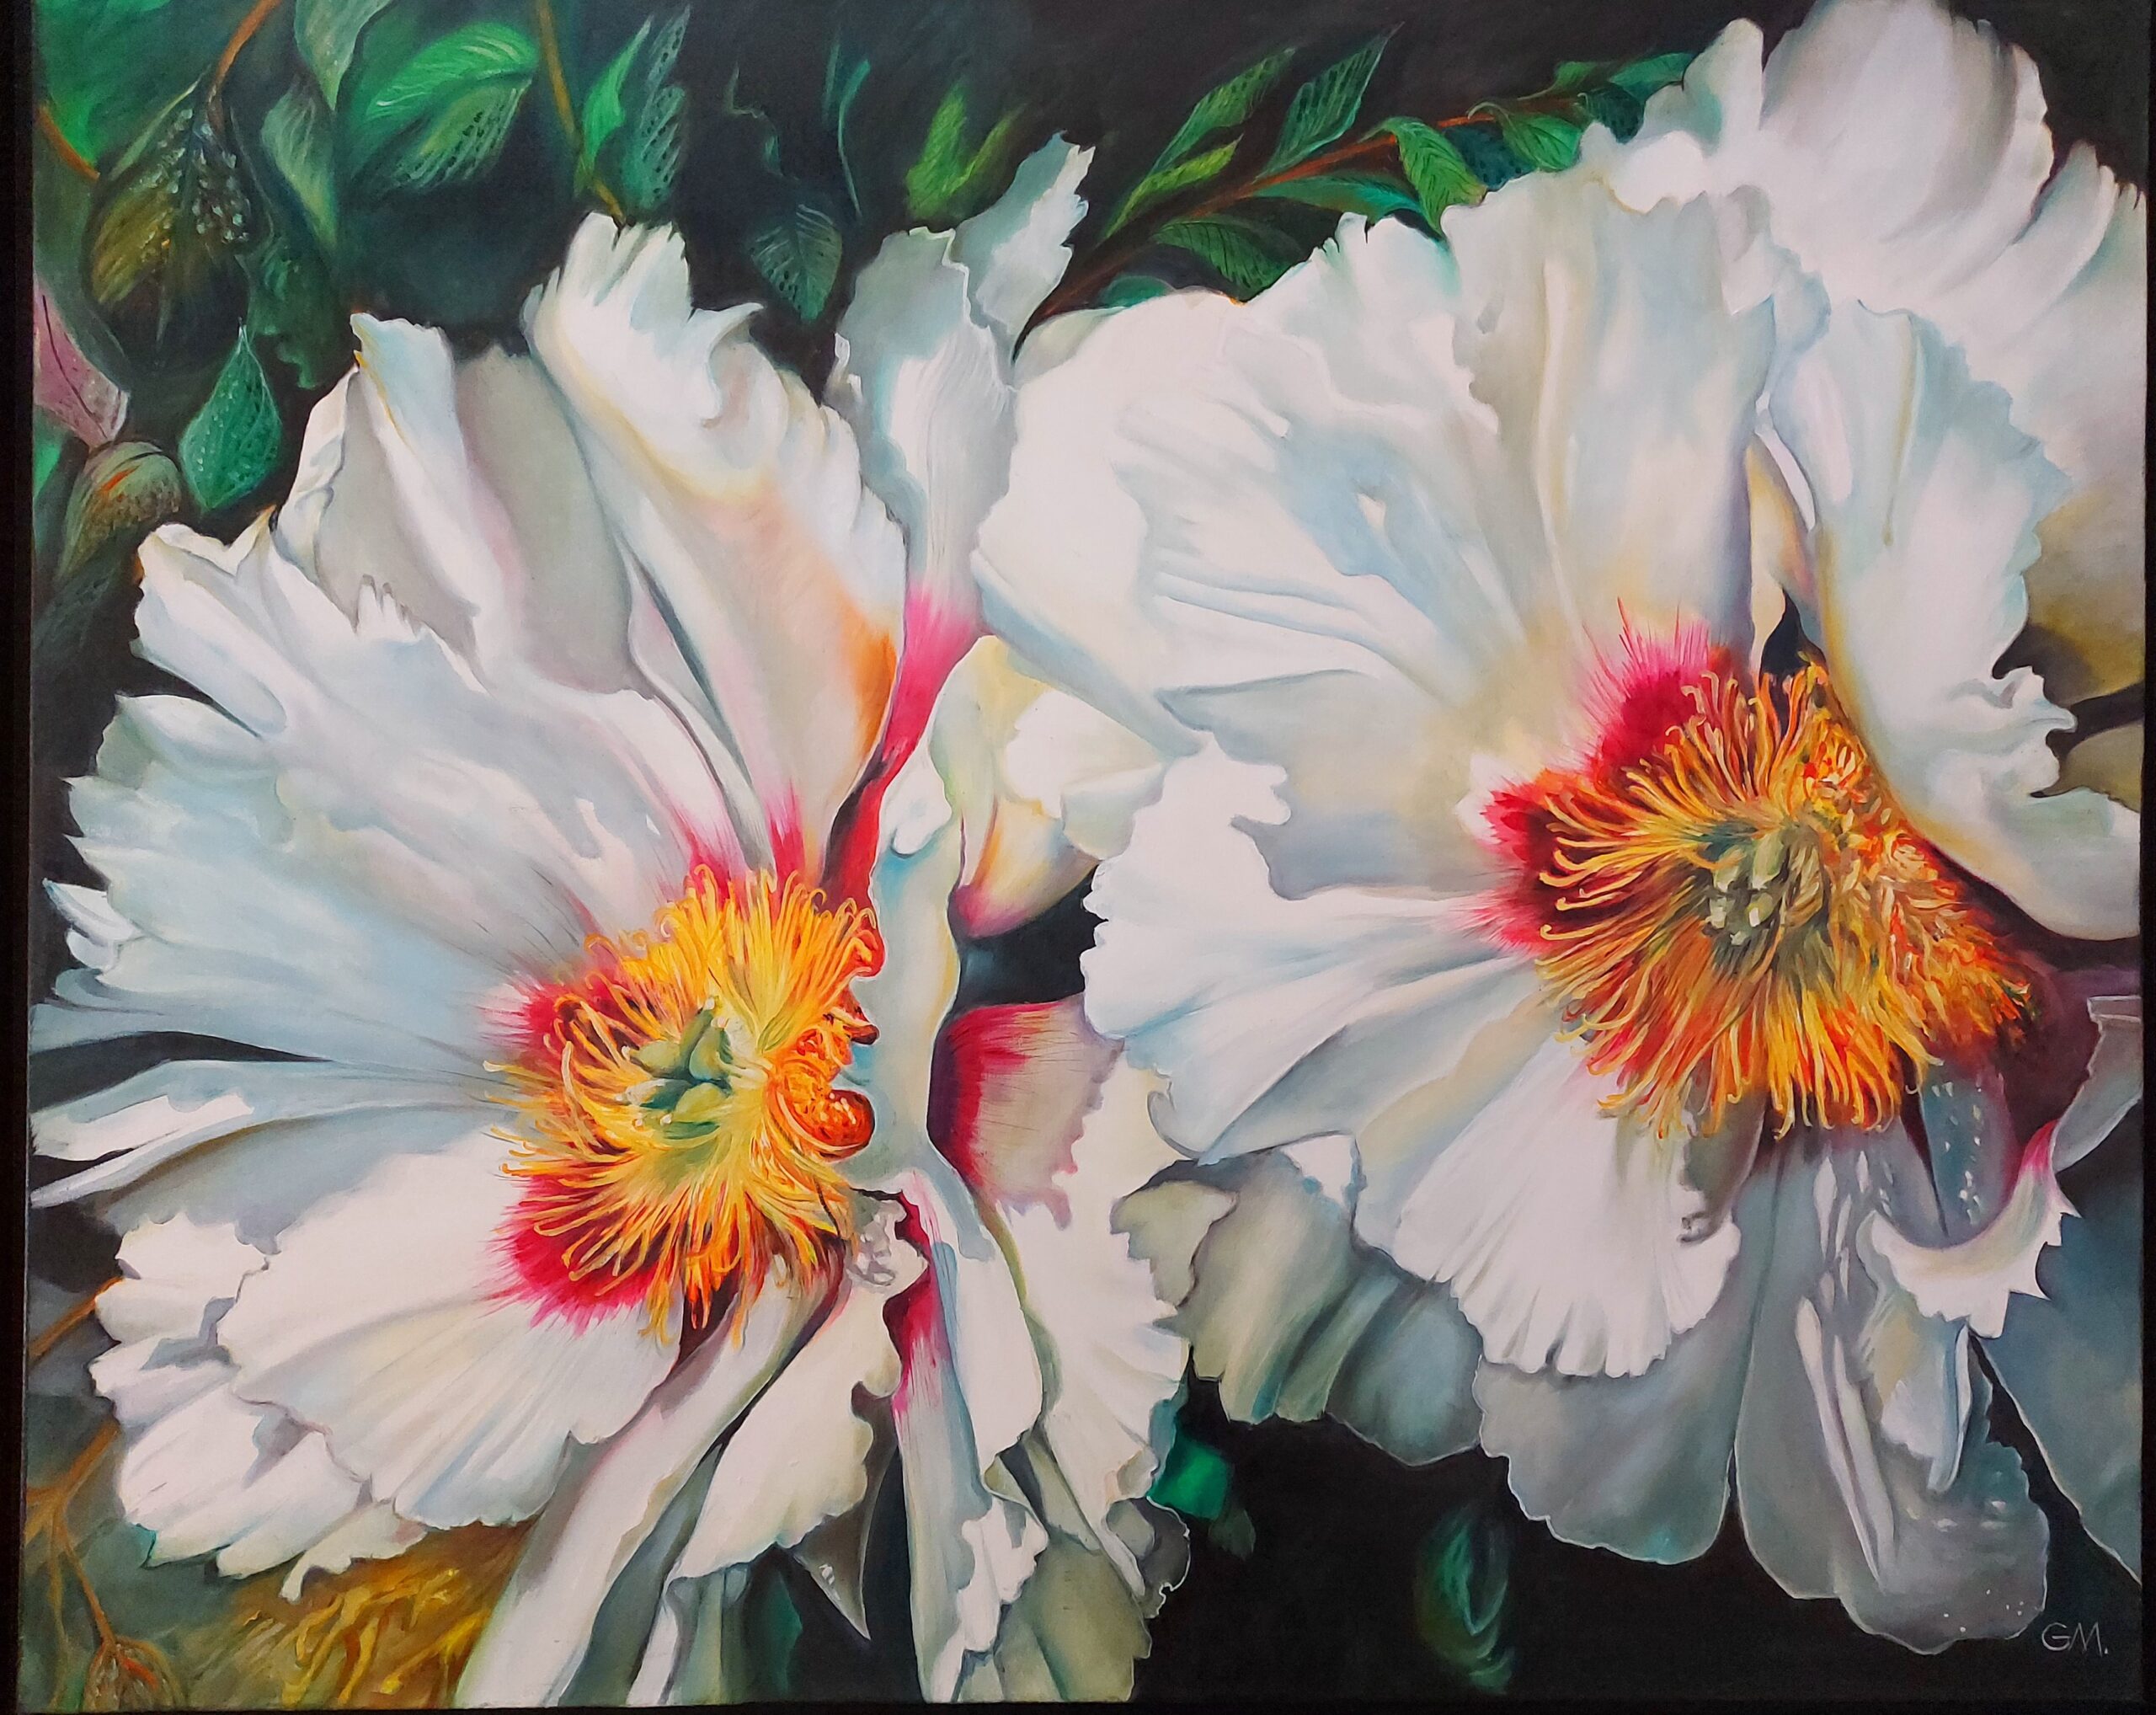 Gina Malinowski, cykl Kwiaty, Białe piwonie, 2018, olej na płótnie, 110 x 90 cm